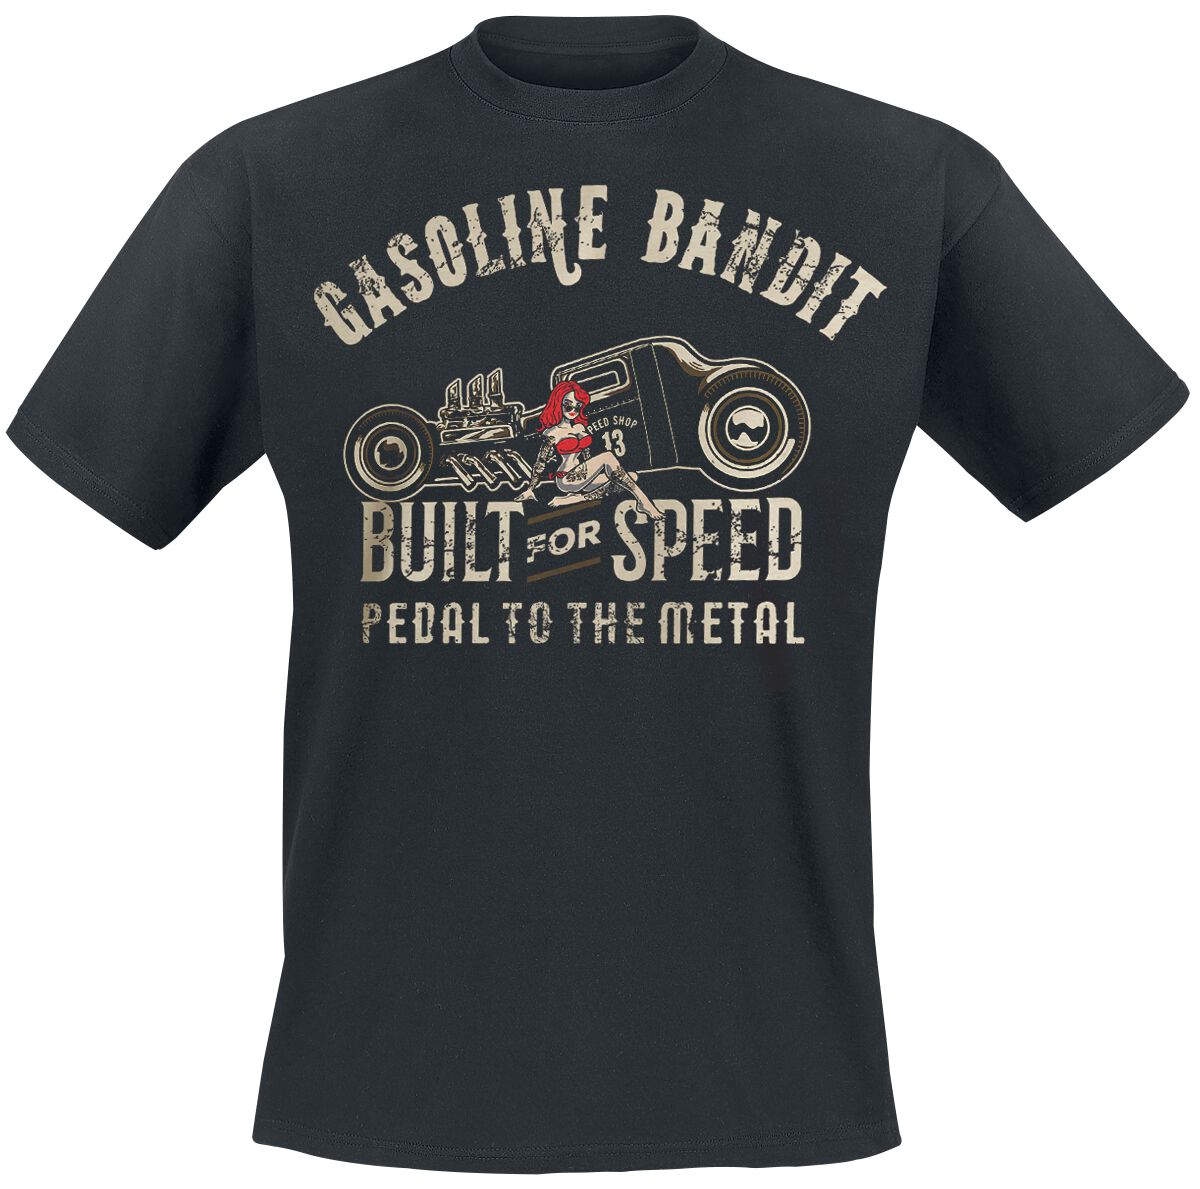 Gasoline Bandit Built For Speed T-Shirt black